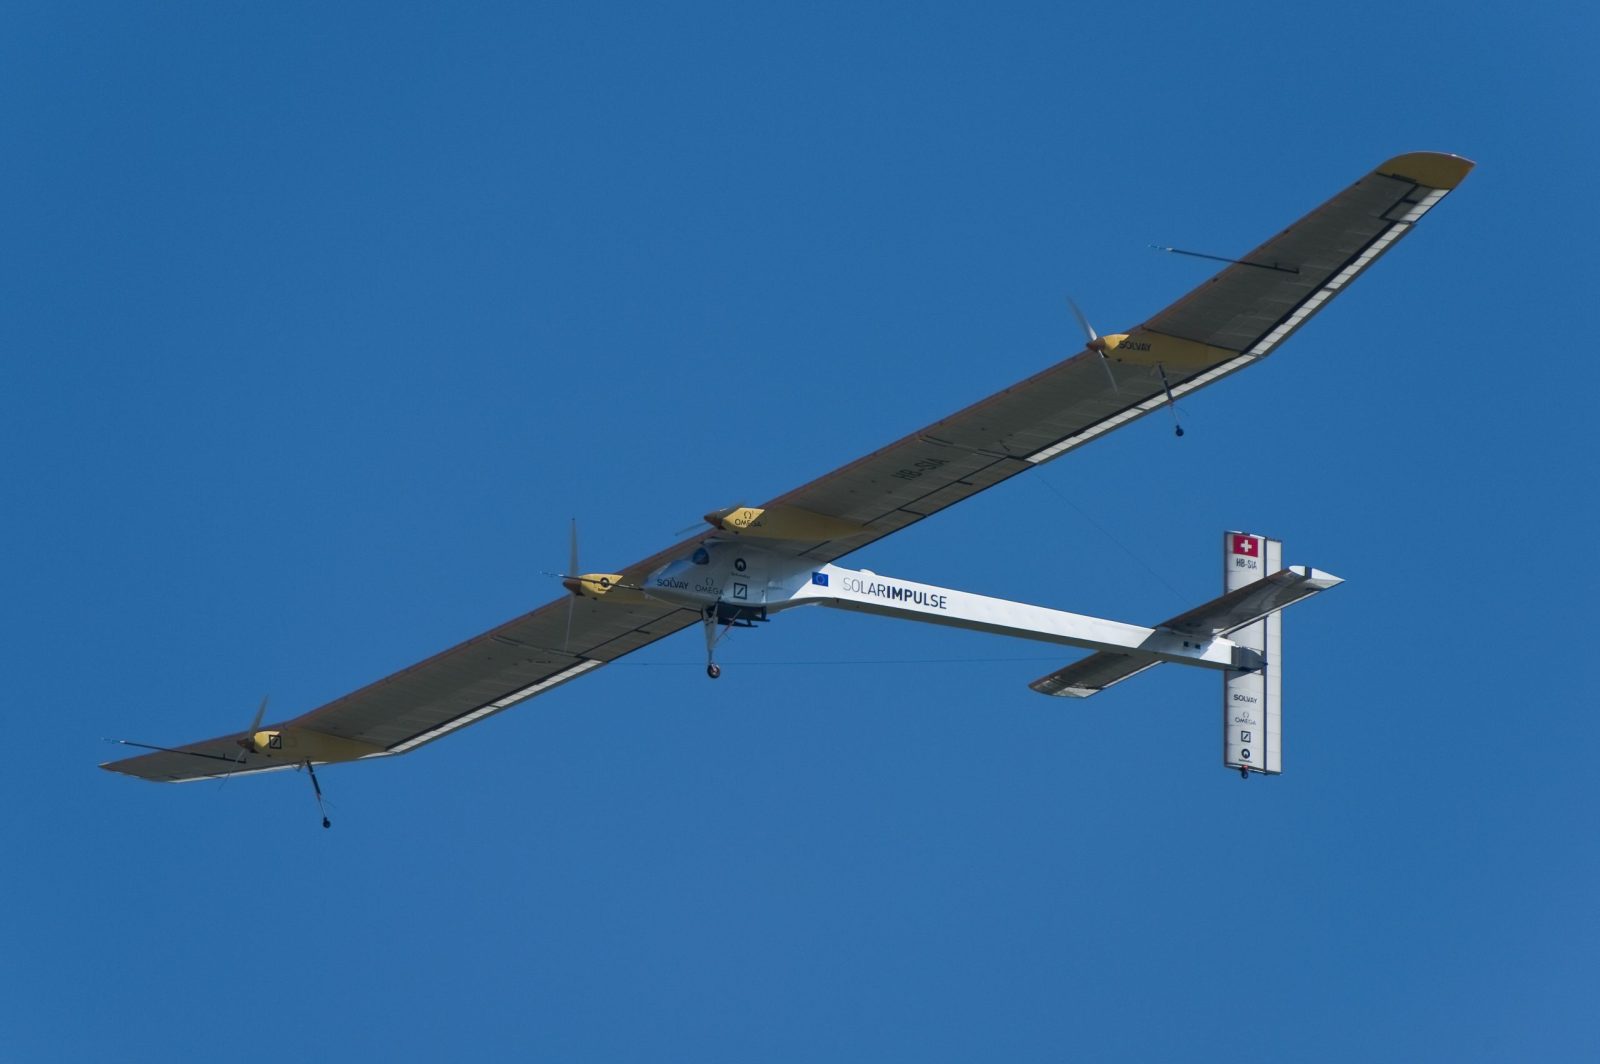 Solar impulse plane flying